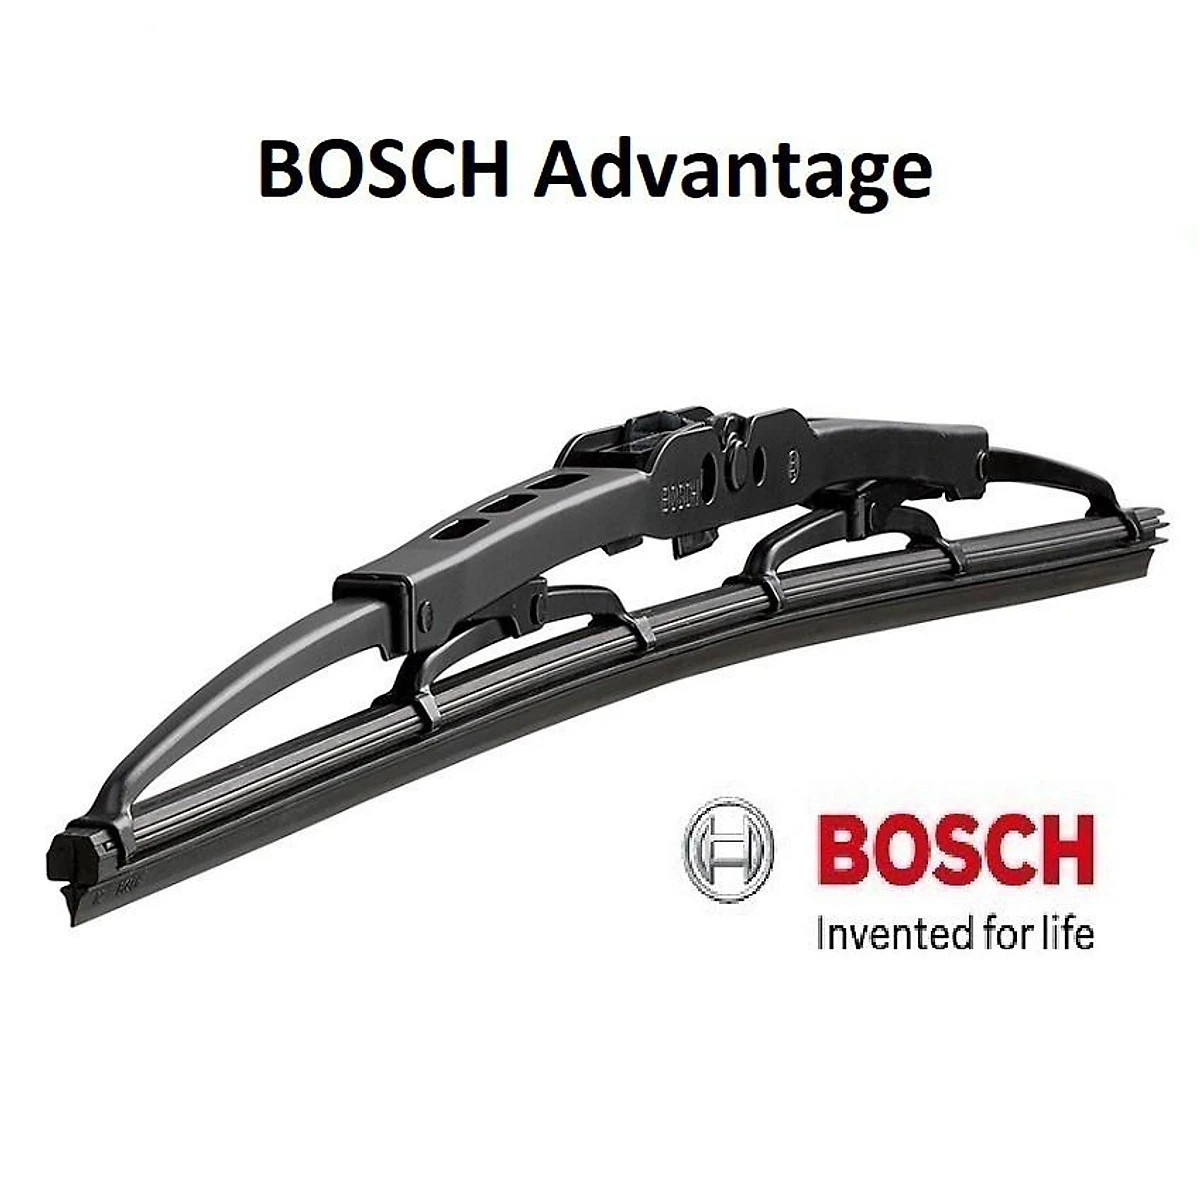 Gạt mưa Bosch ADVANTAGE BA xương sắt chính hãng nhiều kích thước cho nhiều loại xe 14inch 16inch 17inch 18inch 19inch 20inch 21inch 22inch 24inch 26inch 28inch